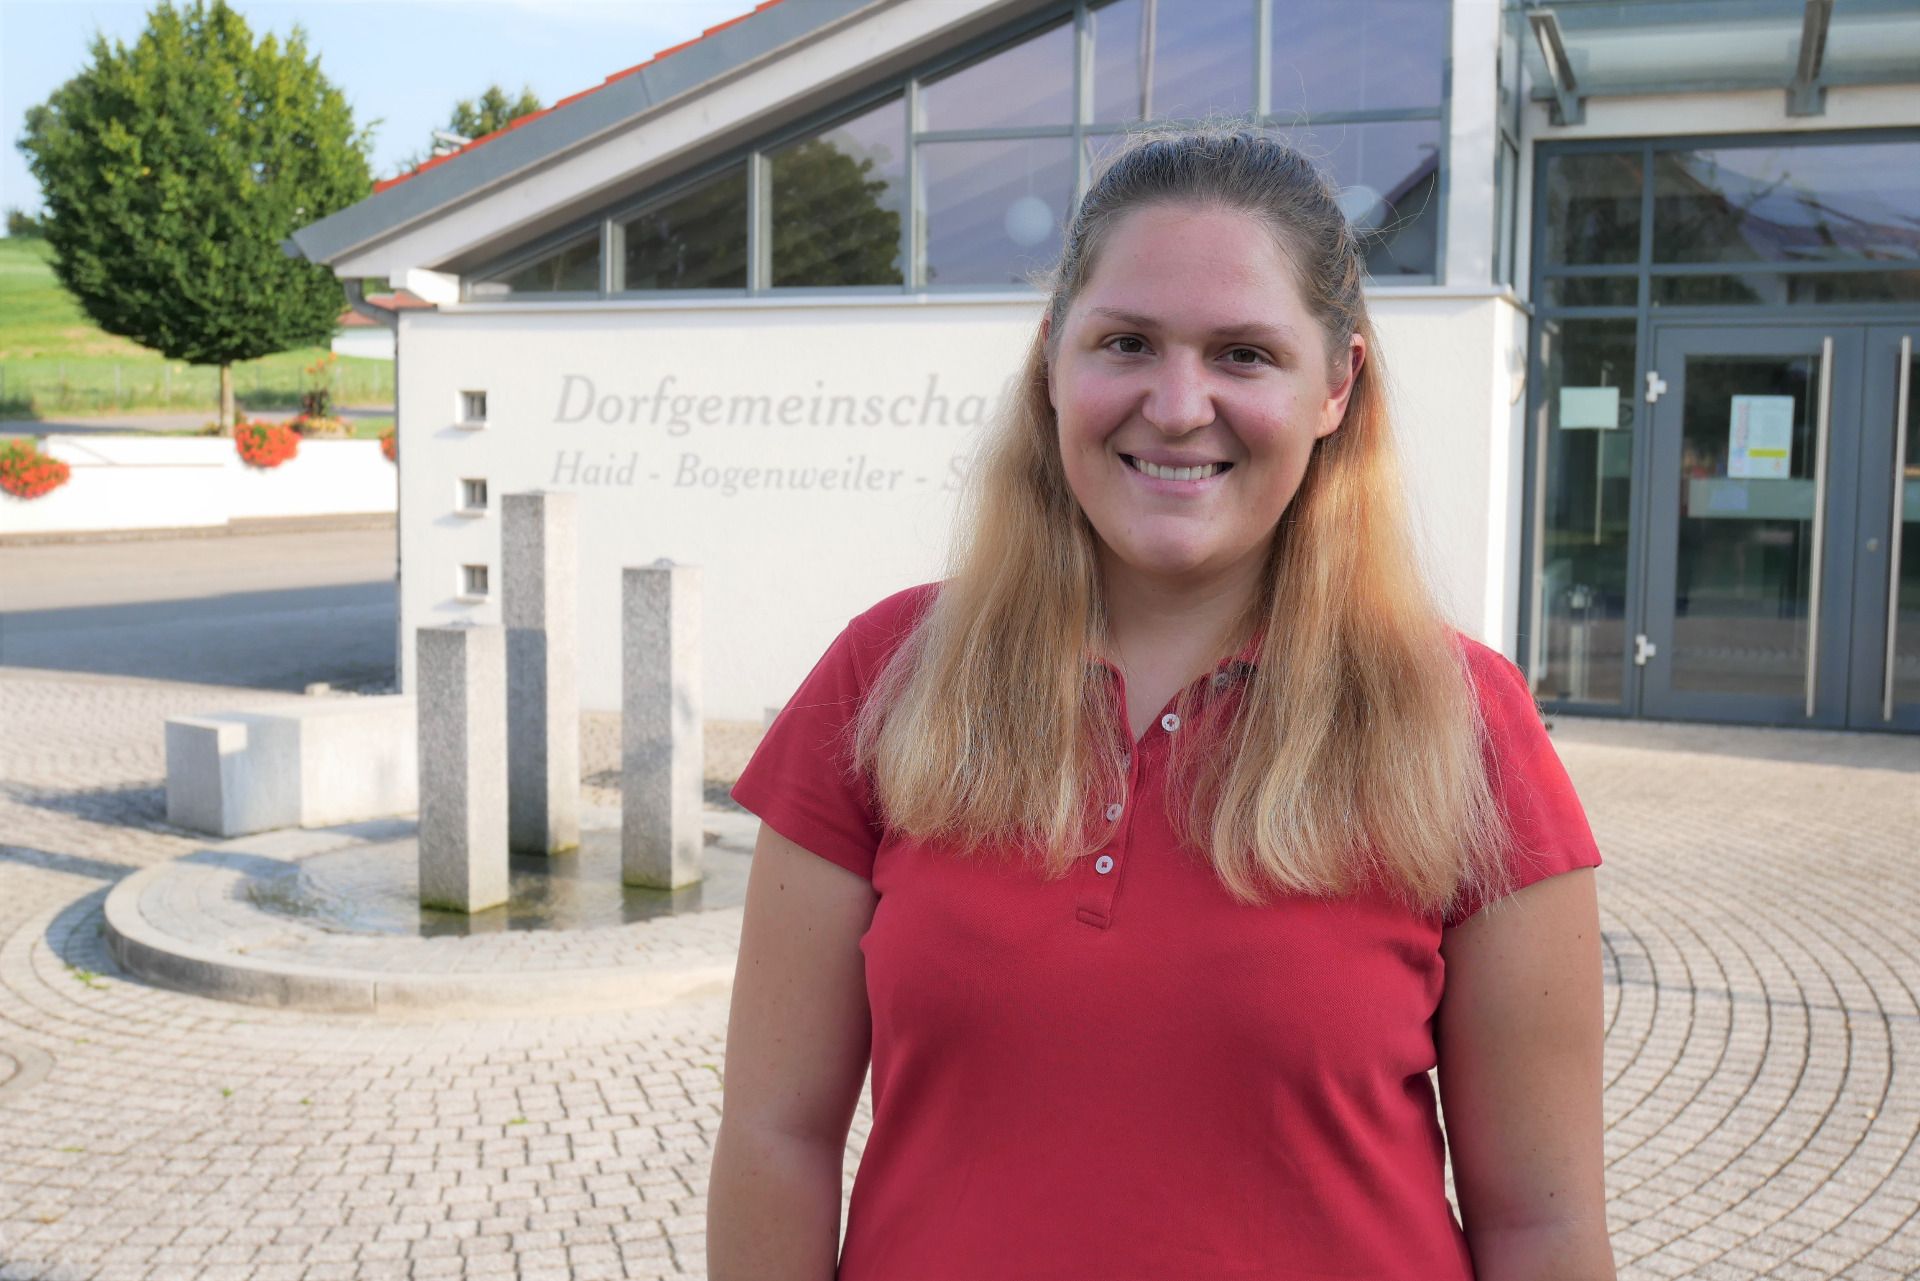 Nach erfolgreichem Studium wird Lena Böhme nun die Ausbildung zur Fachärztin anpacken.